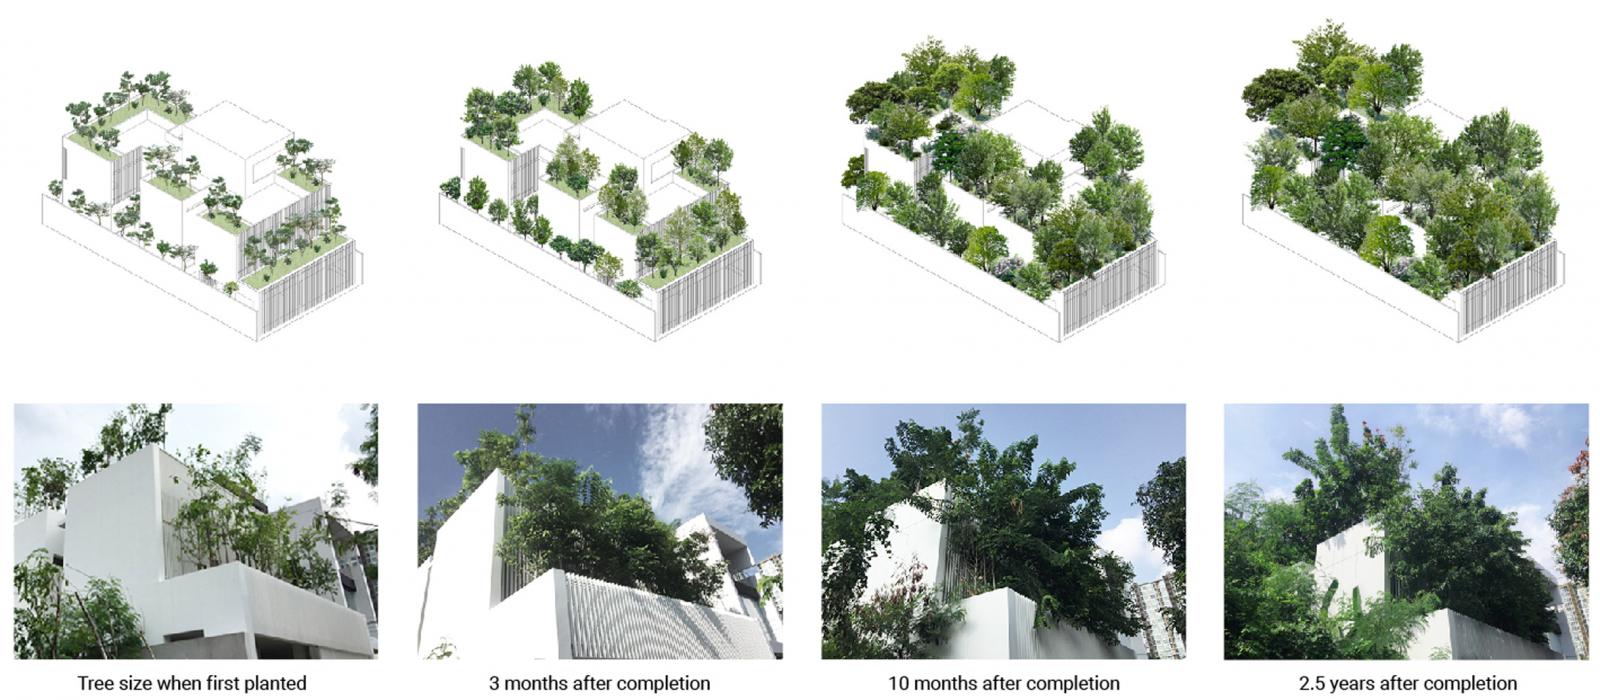 Phối cảnh kiến trúc ngôi nhà cho cây xanh ở Thái Lan